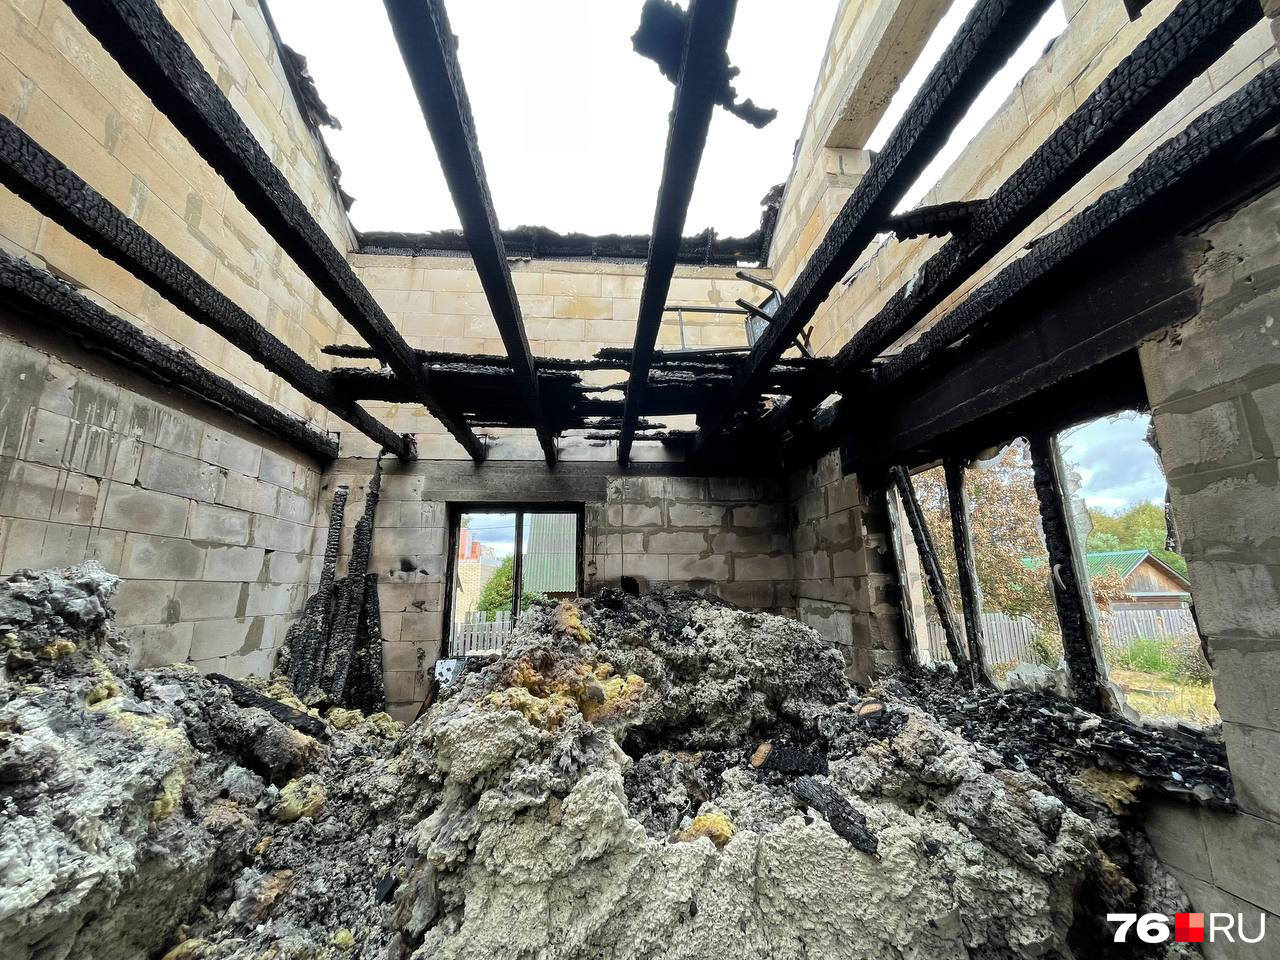 Во время пожара крыша и второй этаж рухнули вниз